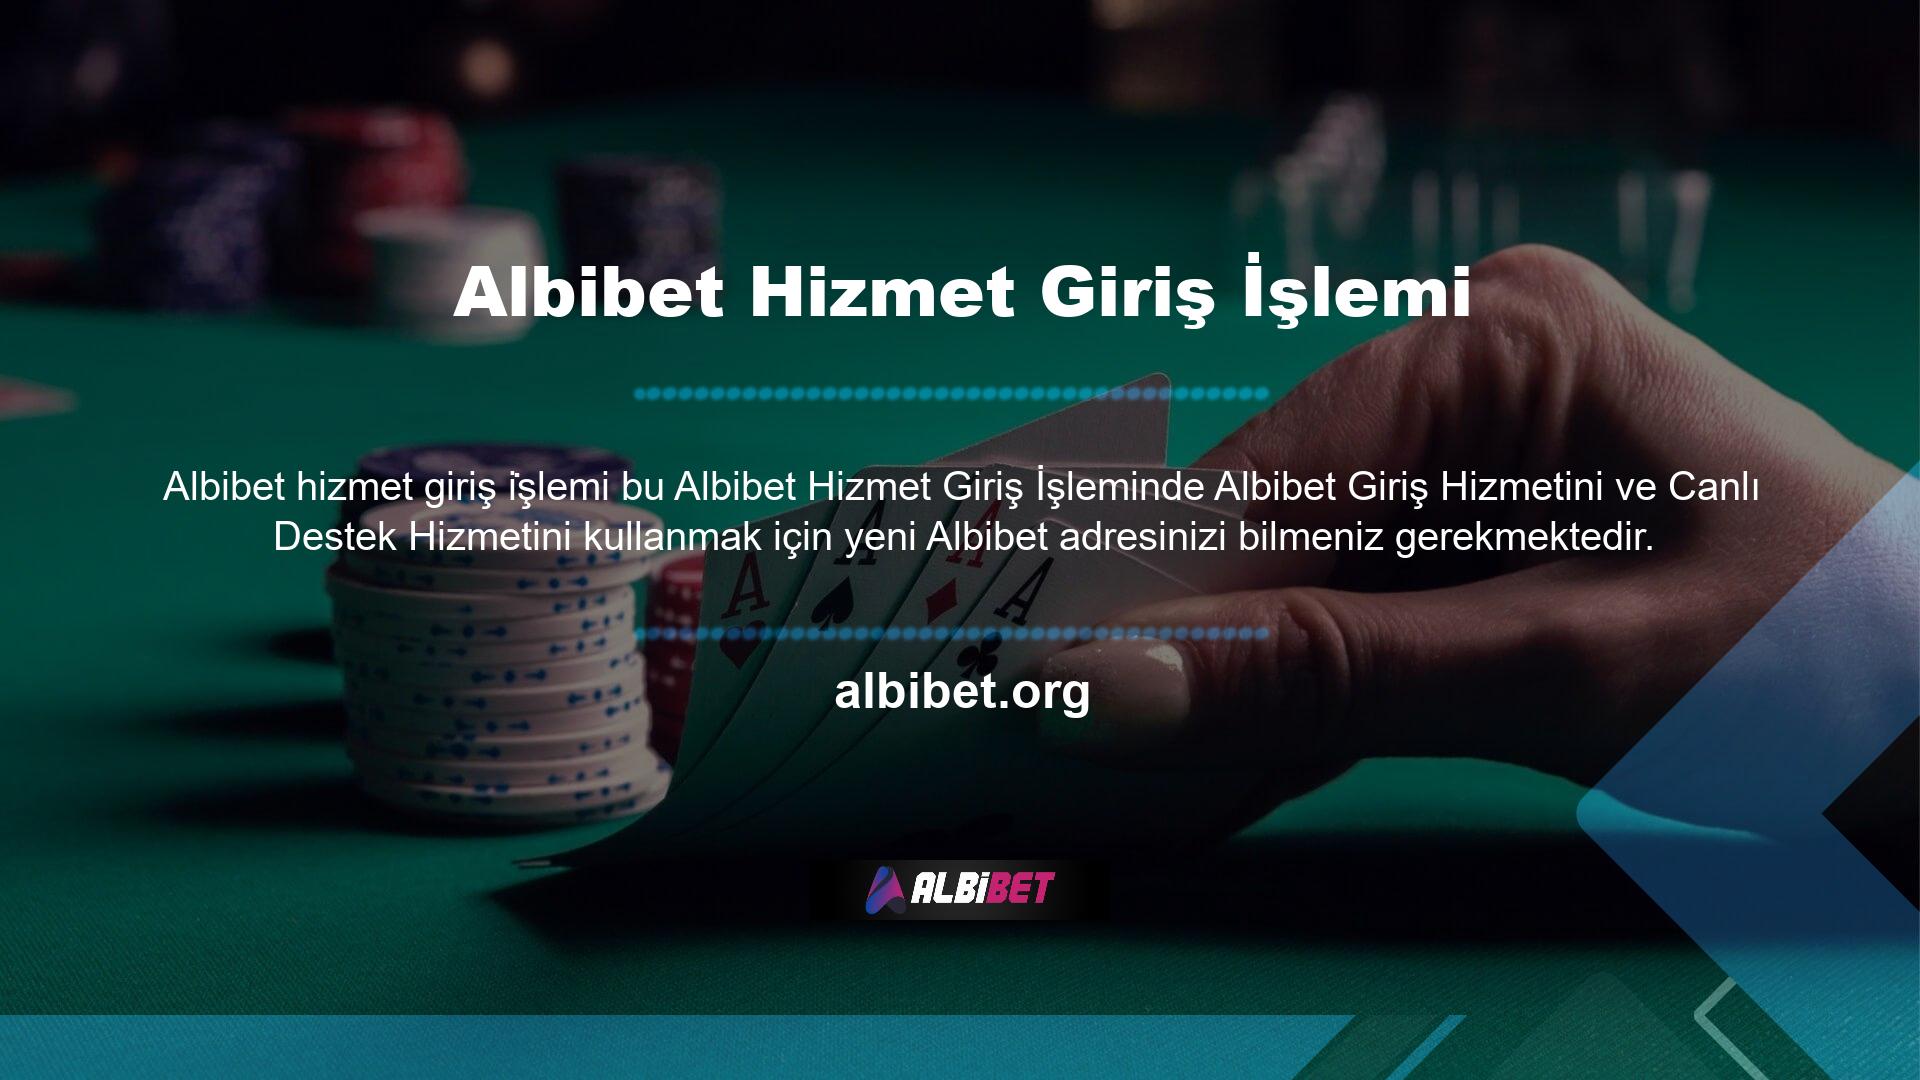 Şu anda mevcut olan son site adresi Albibet adıdır